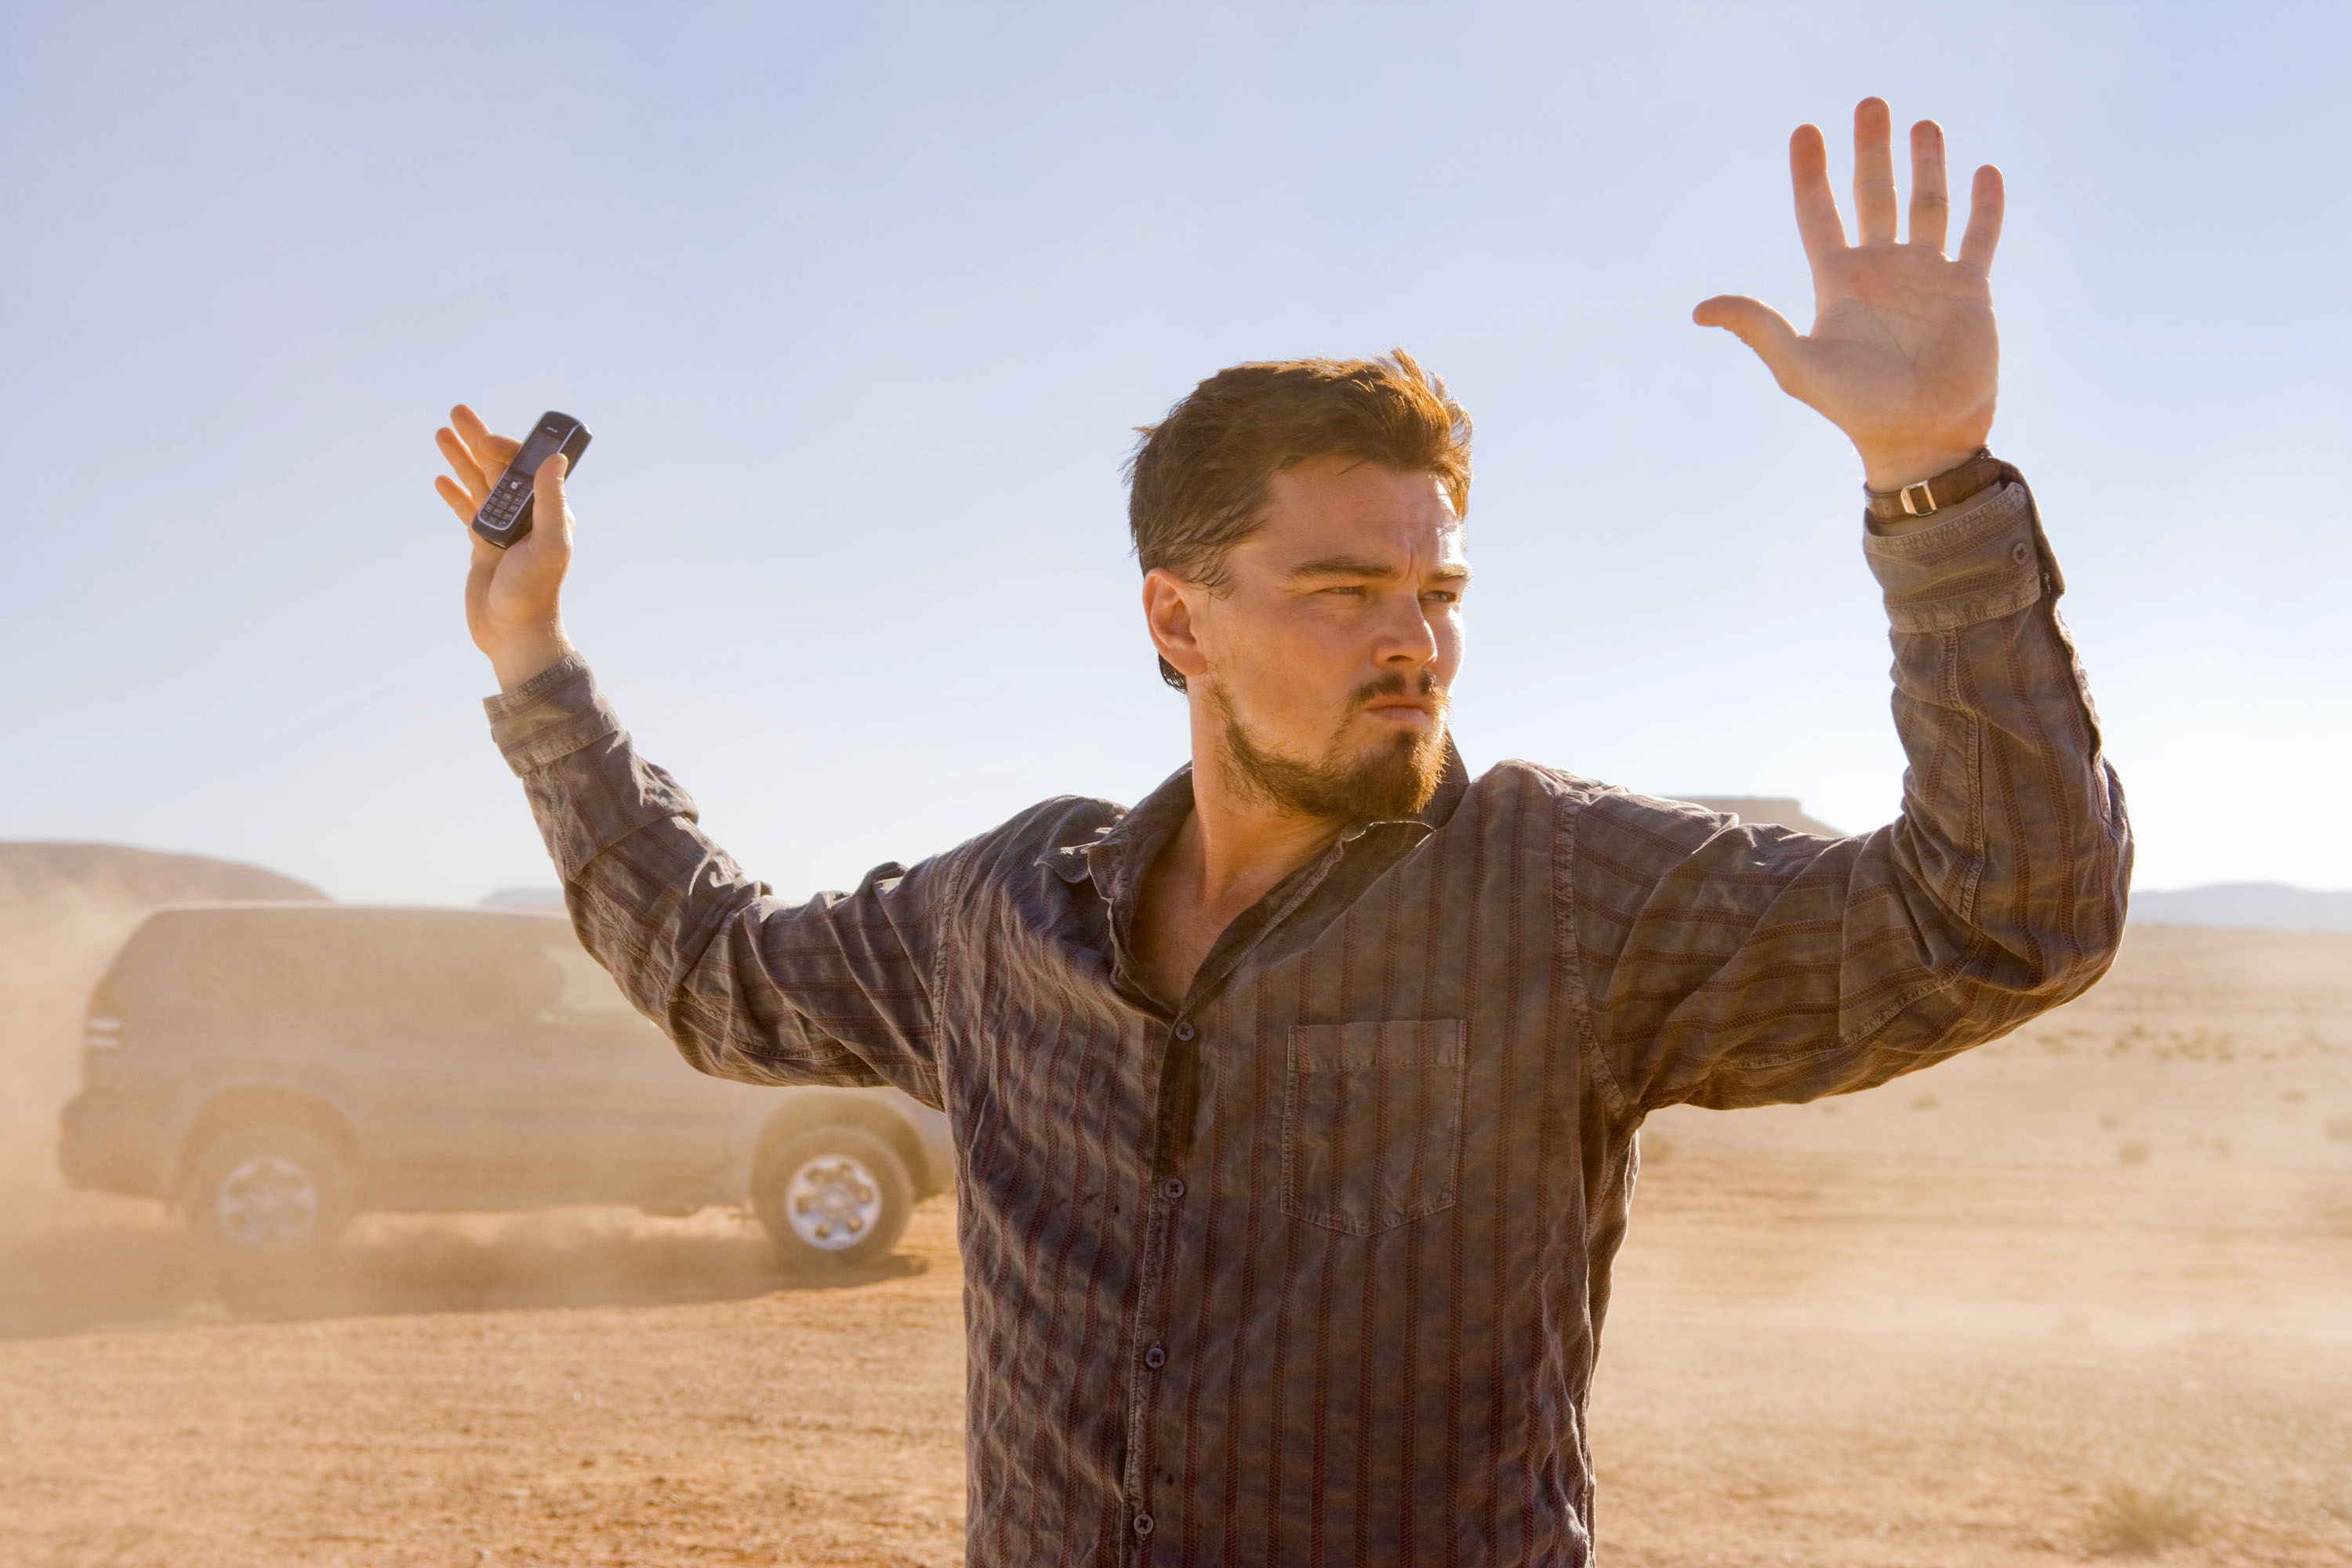 Leonardo DiCaprio puts his hands up in the desert